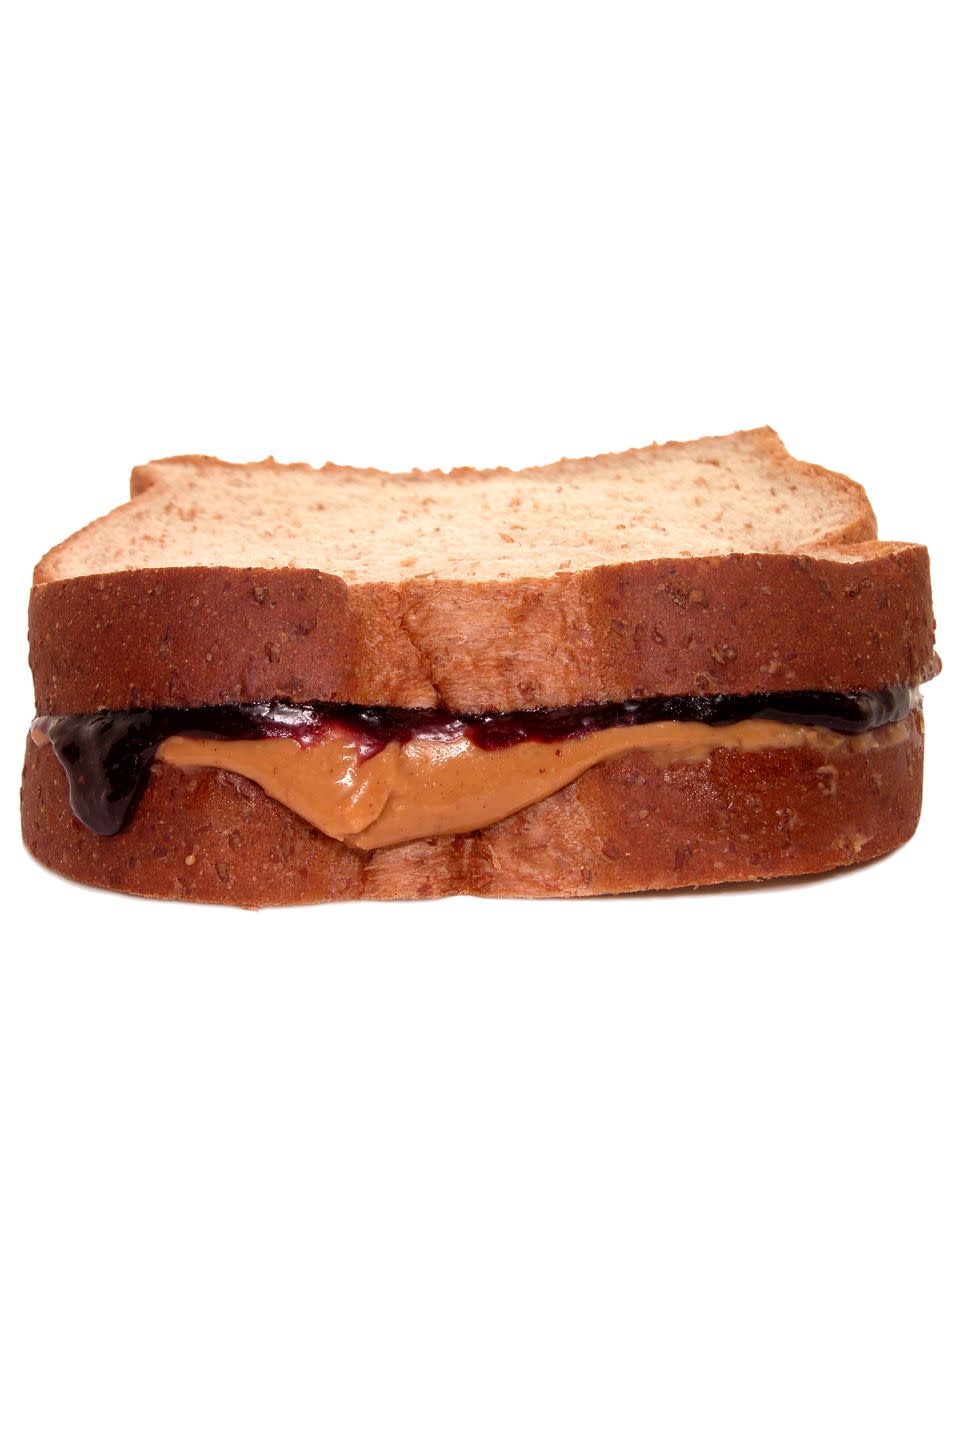 PB&J Sandwich